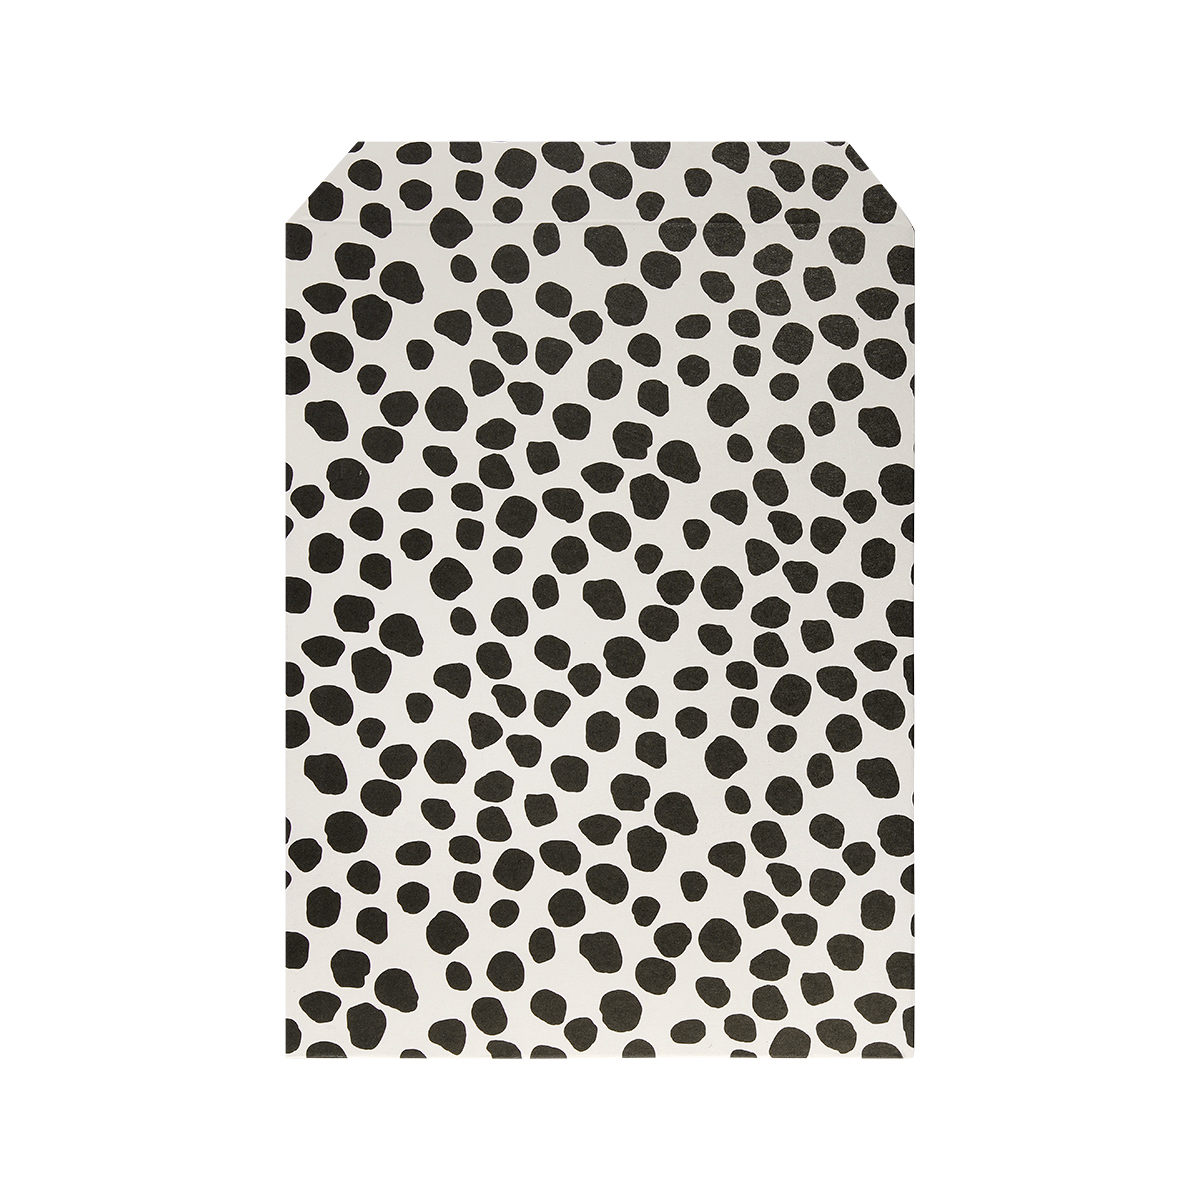 Bolsa de papel con estampado de leopardo pequeña